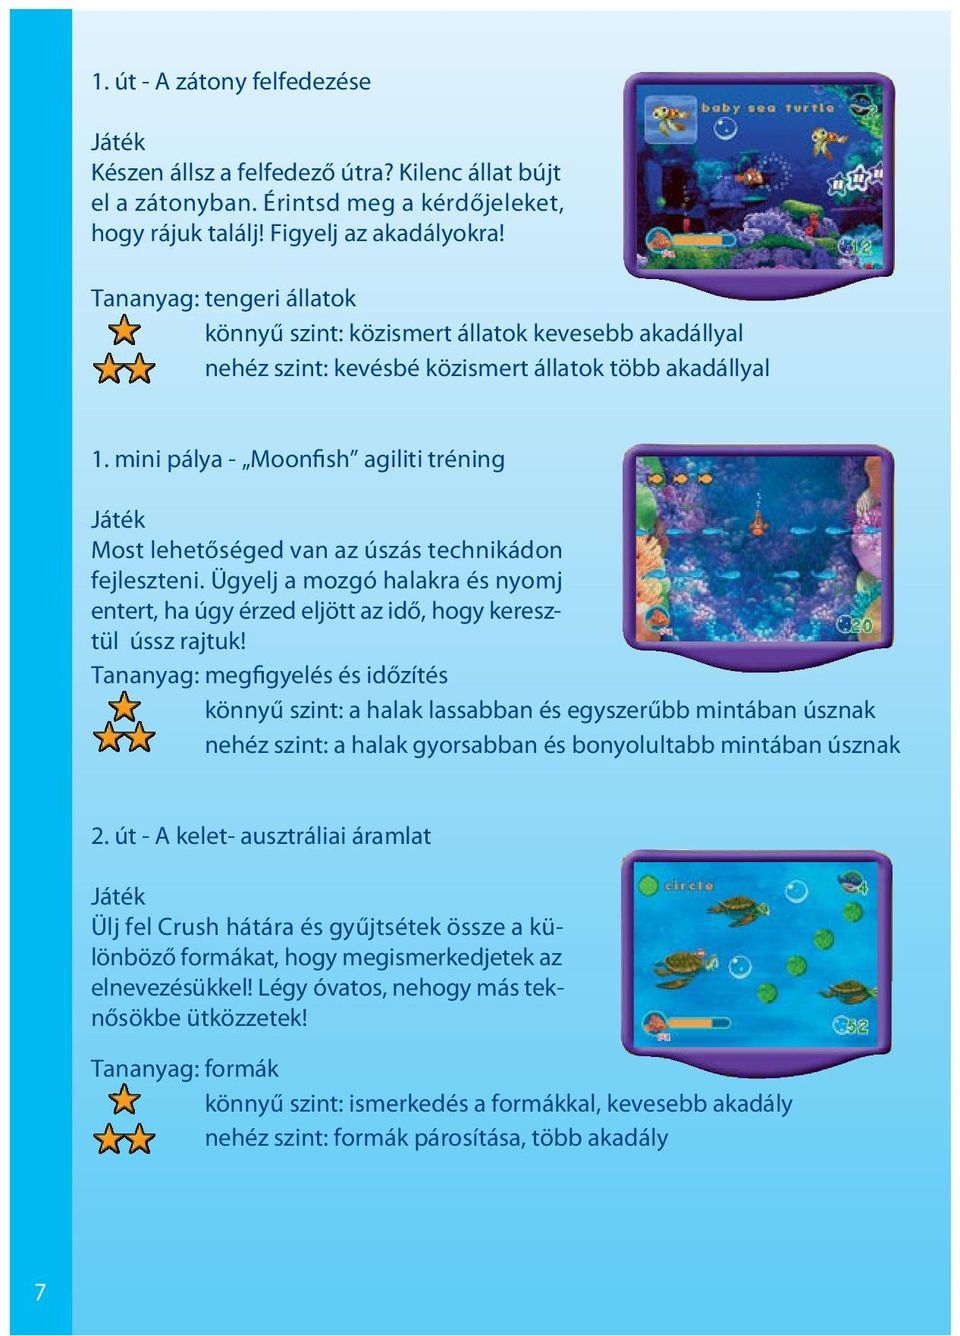 mini pálya - Moonfish agiliti tréning Most lehetőséged van az úszás technikádon fejleszteni. Ügyelj a mozgó halakra és nyomj entert, ha úgy érzed eljött az idő, hogy keresztül ússz rajtuk!